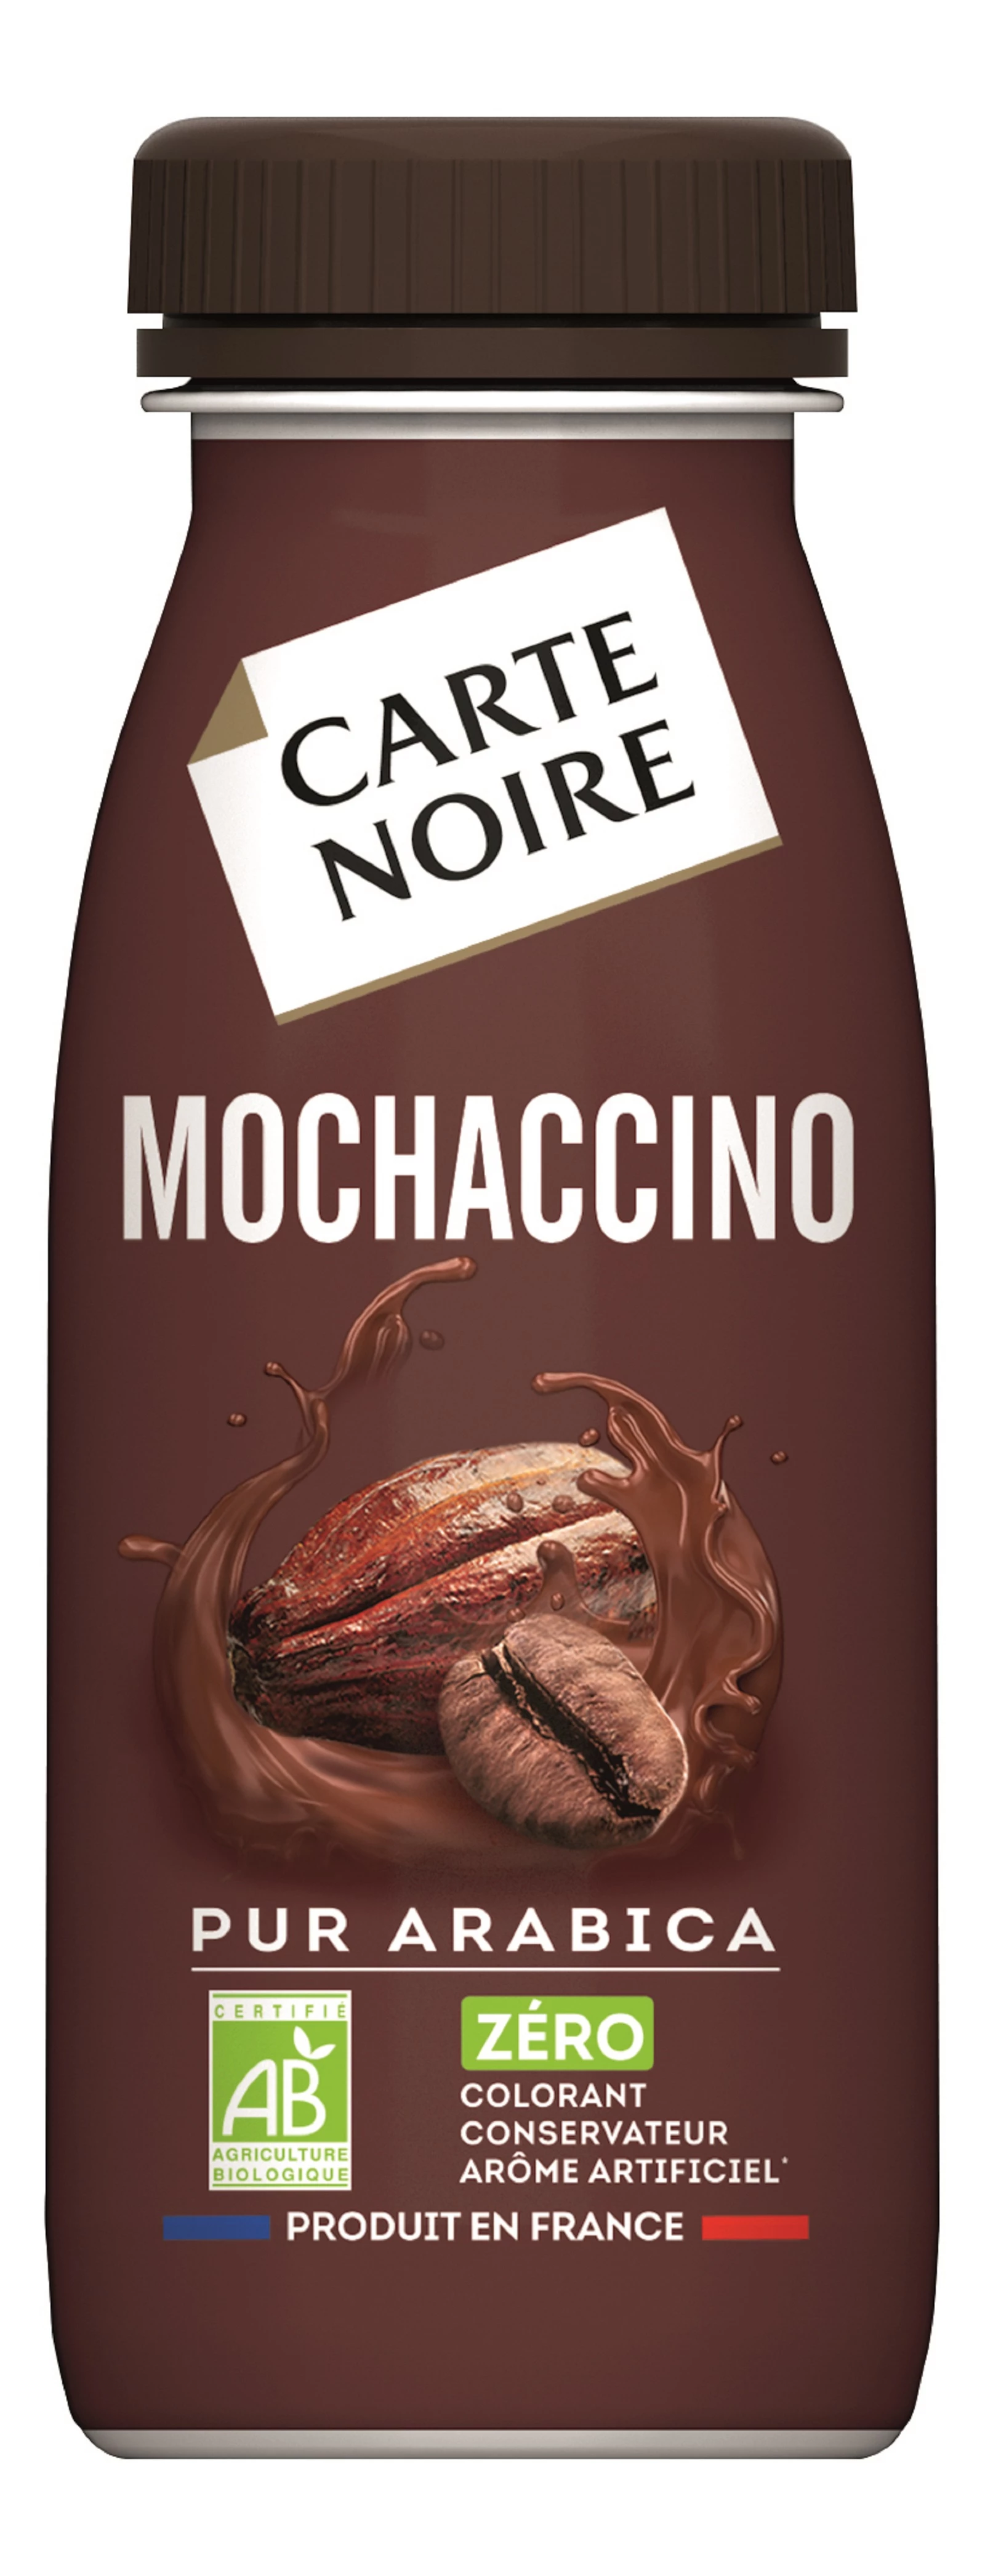 Bio-Mochaccino-Kaffeegetränk 25cl - CARTE NOIRE